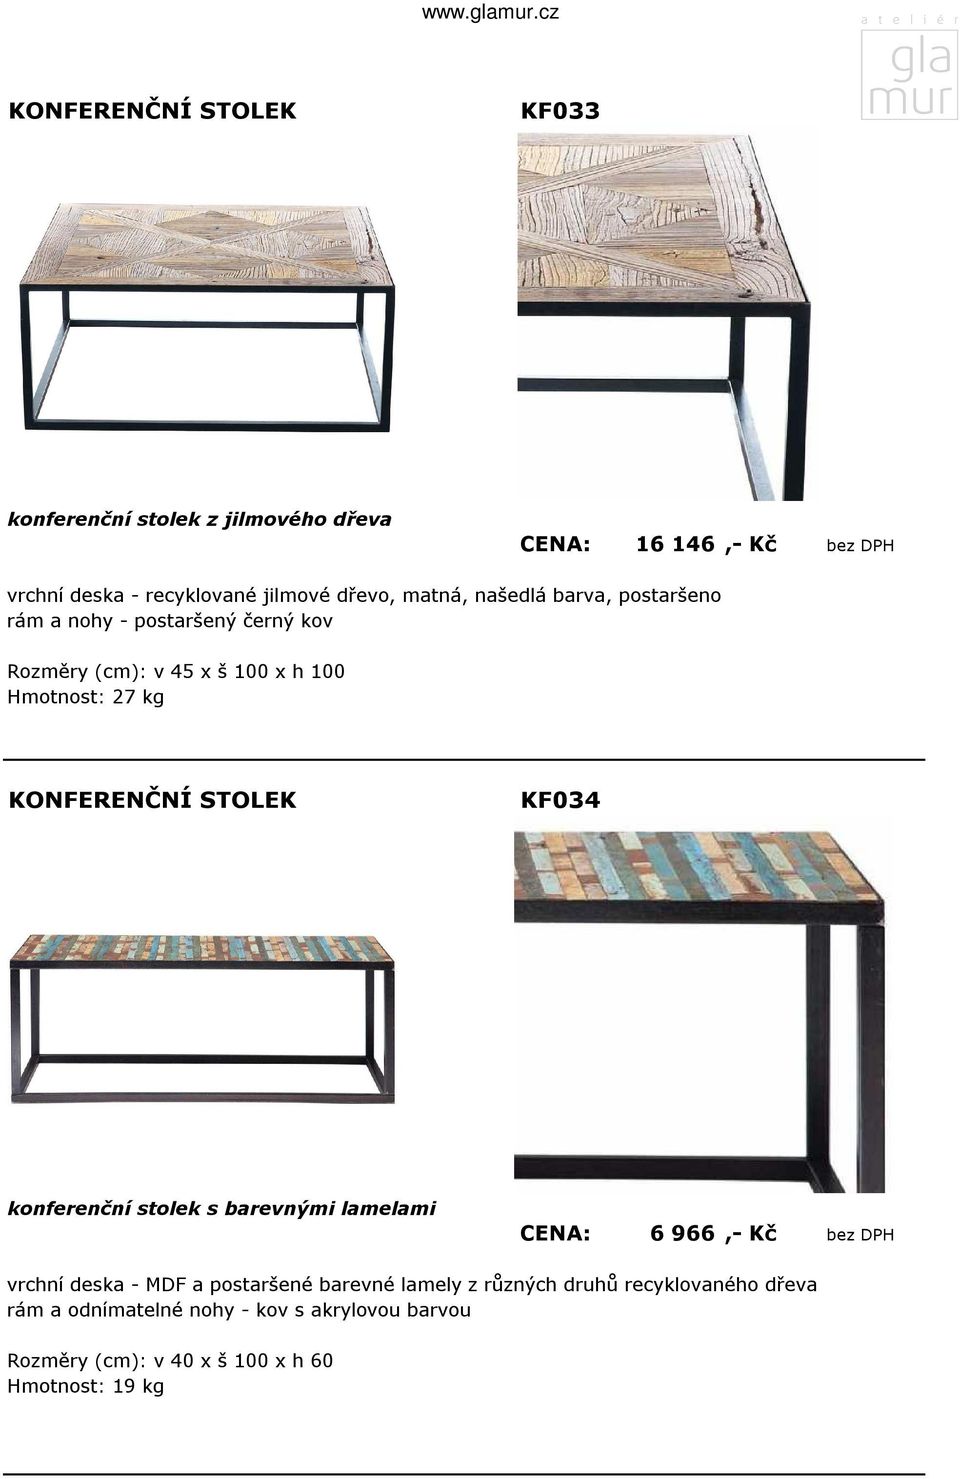 konferenční stolek s barevnými lamelami CENA: 6 966,- Kč bez DPH vrchní deska - MDF a postaršené barevné lamely z